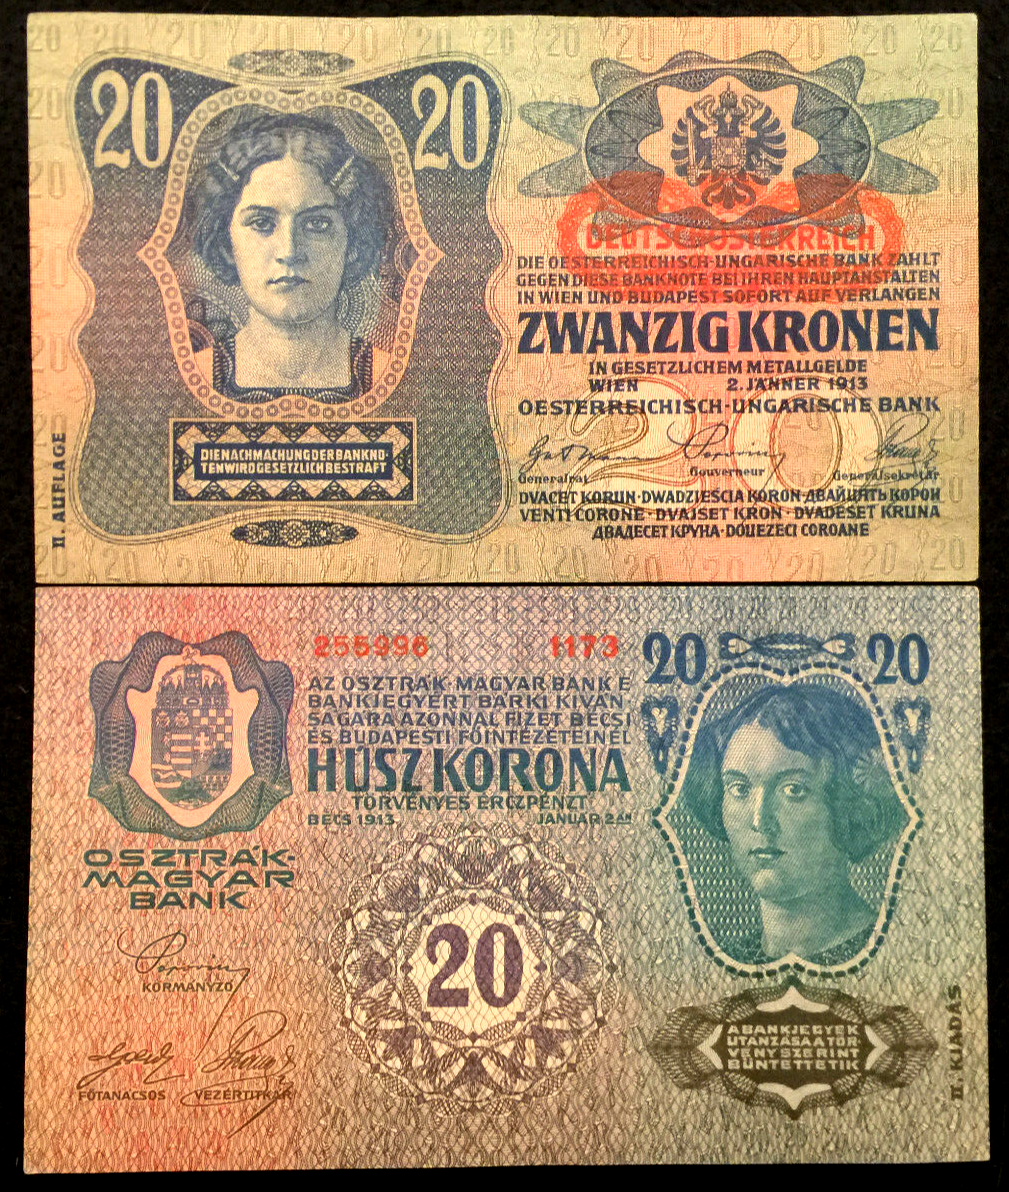 Austria 20 Krone 1913 P53 (FINE) Oesterreichisch-ungarische Bank - 100 Yrs Old